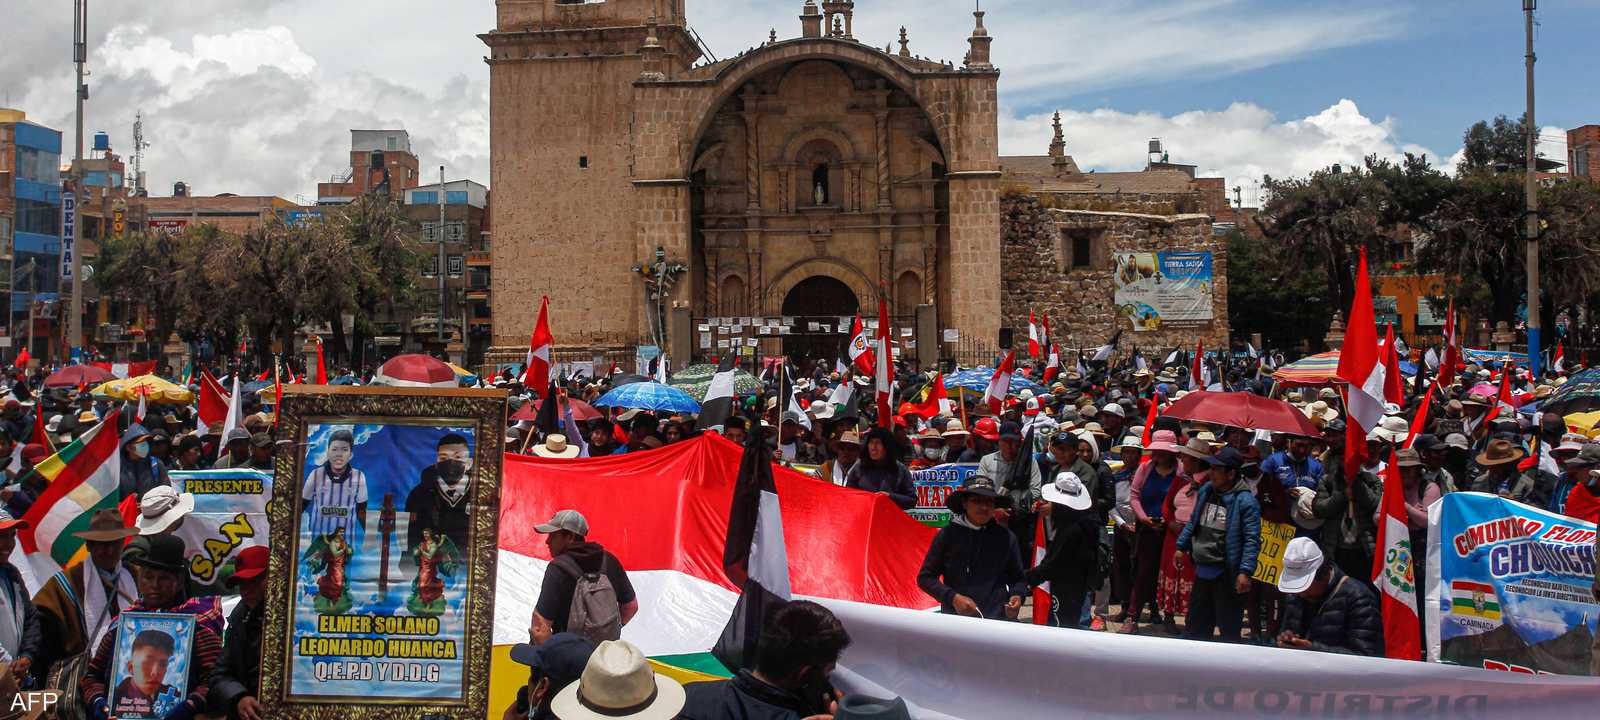 مظاهرات في البيرو تطالب باستقالة رئيسة البلاد